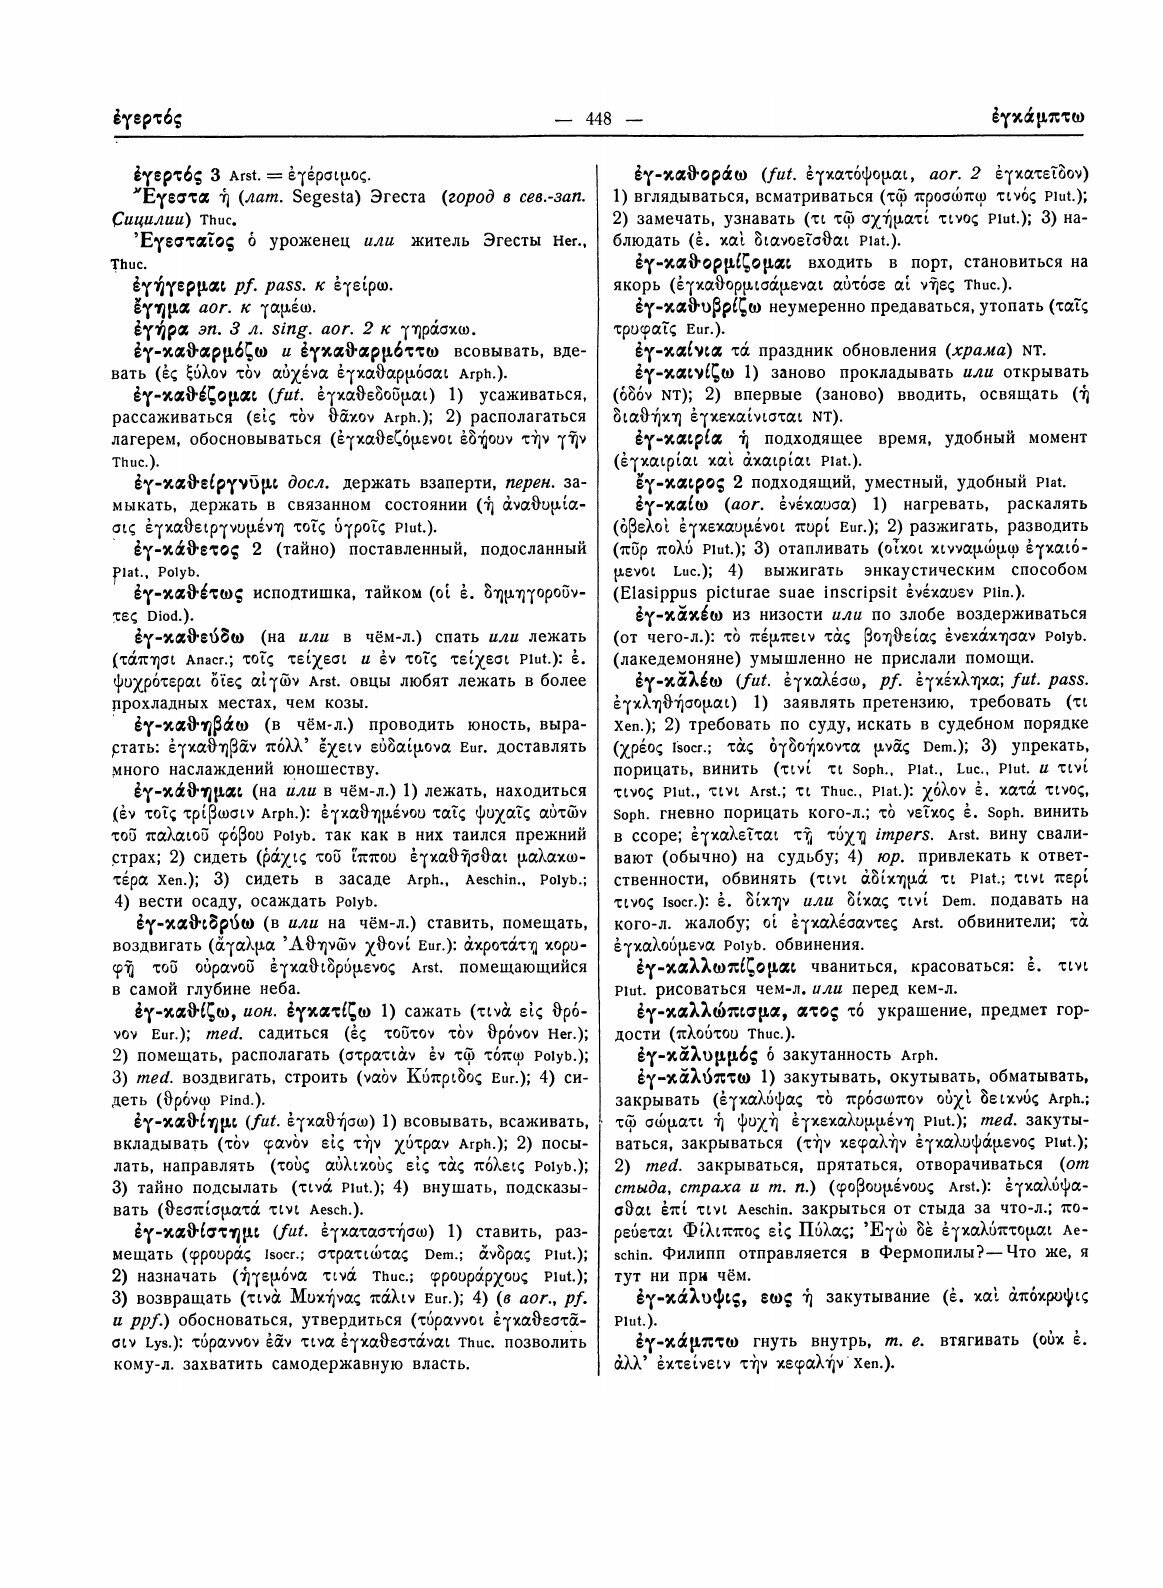 Древнегреческо-русский словарь. Том 1, Часть 2